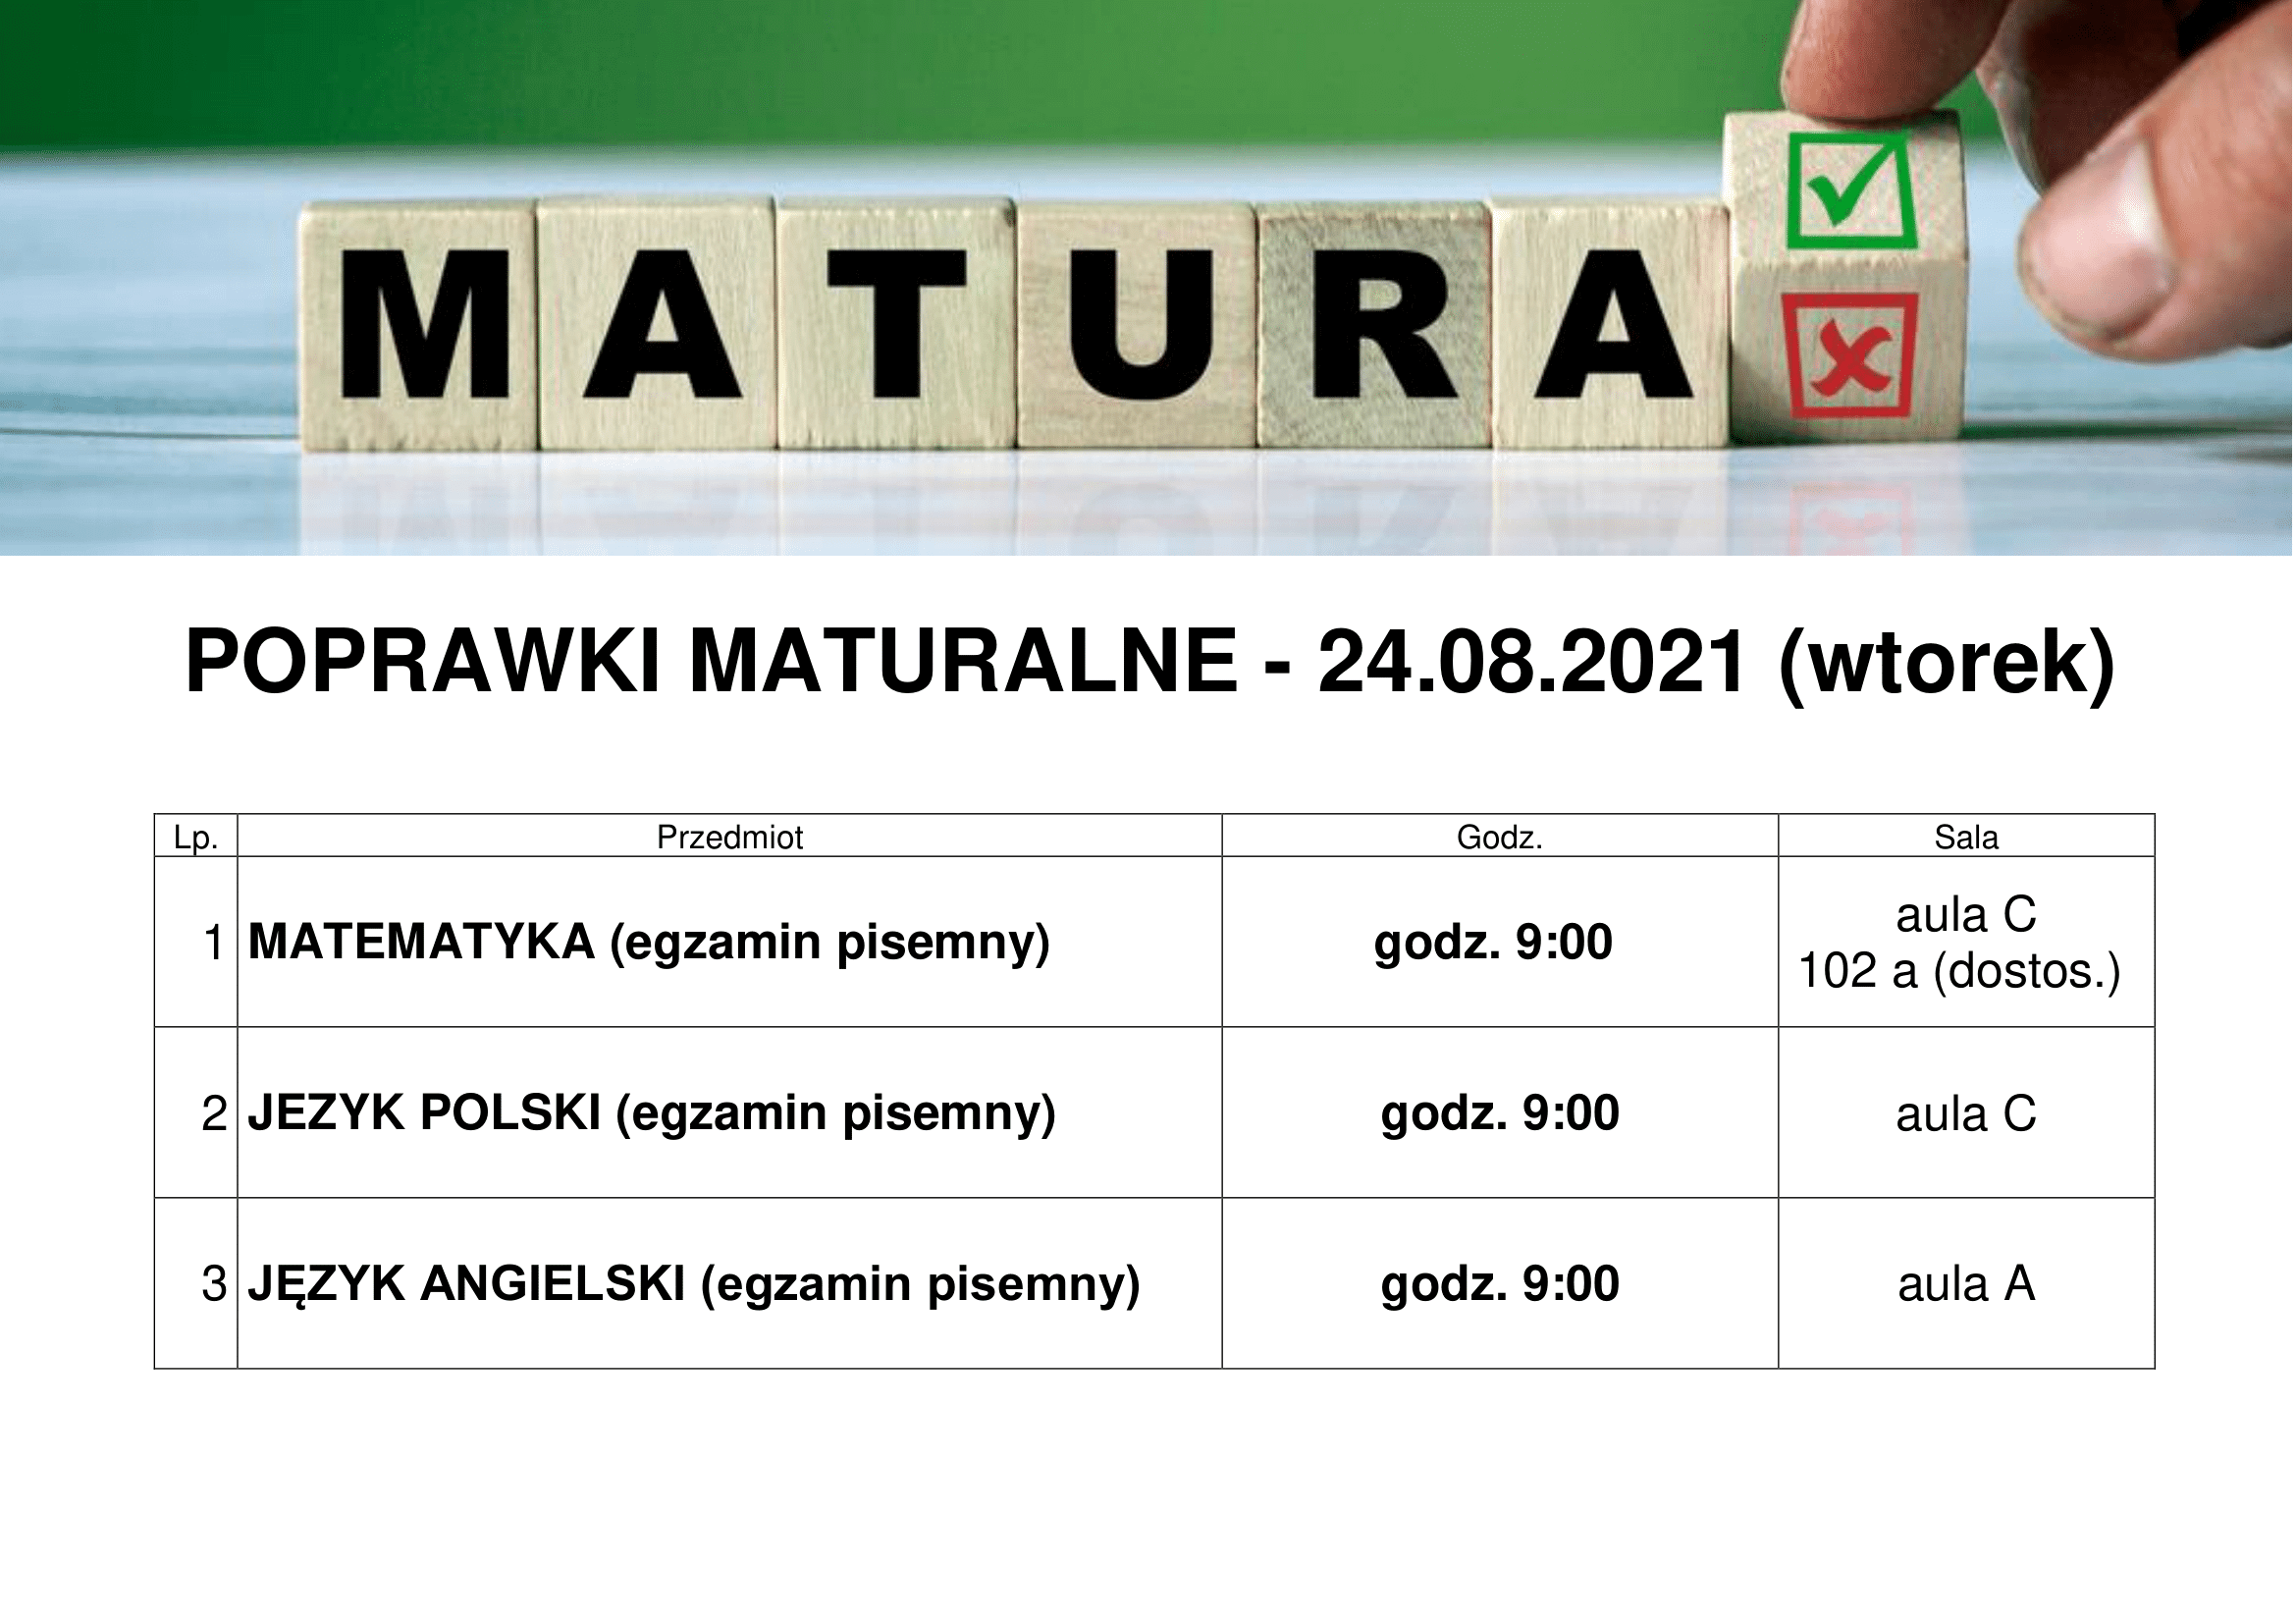 POPRAWKI MATURALNE - 24.08.2021 (wtorek)